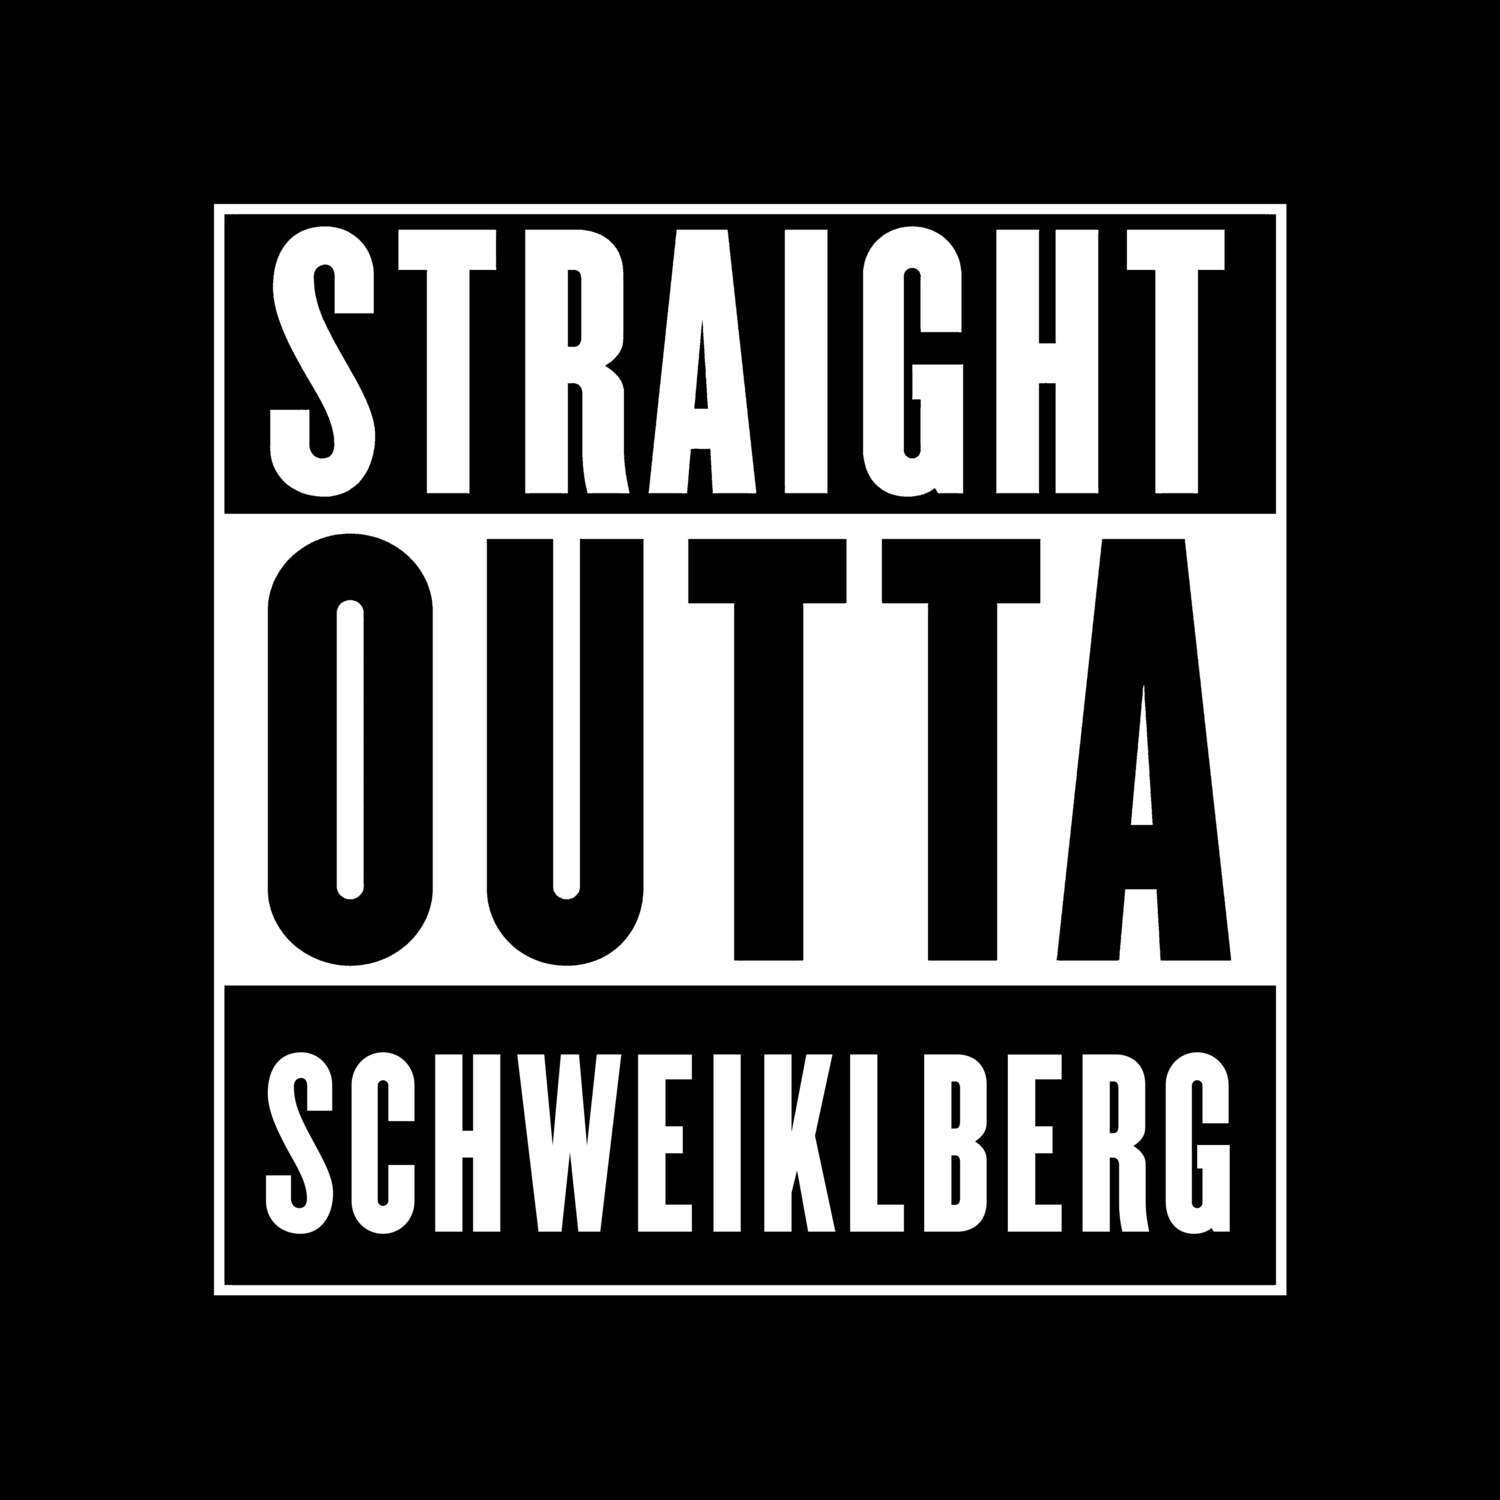 Schweiklberg T-Shirt »Straight Outta«